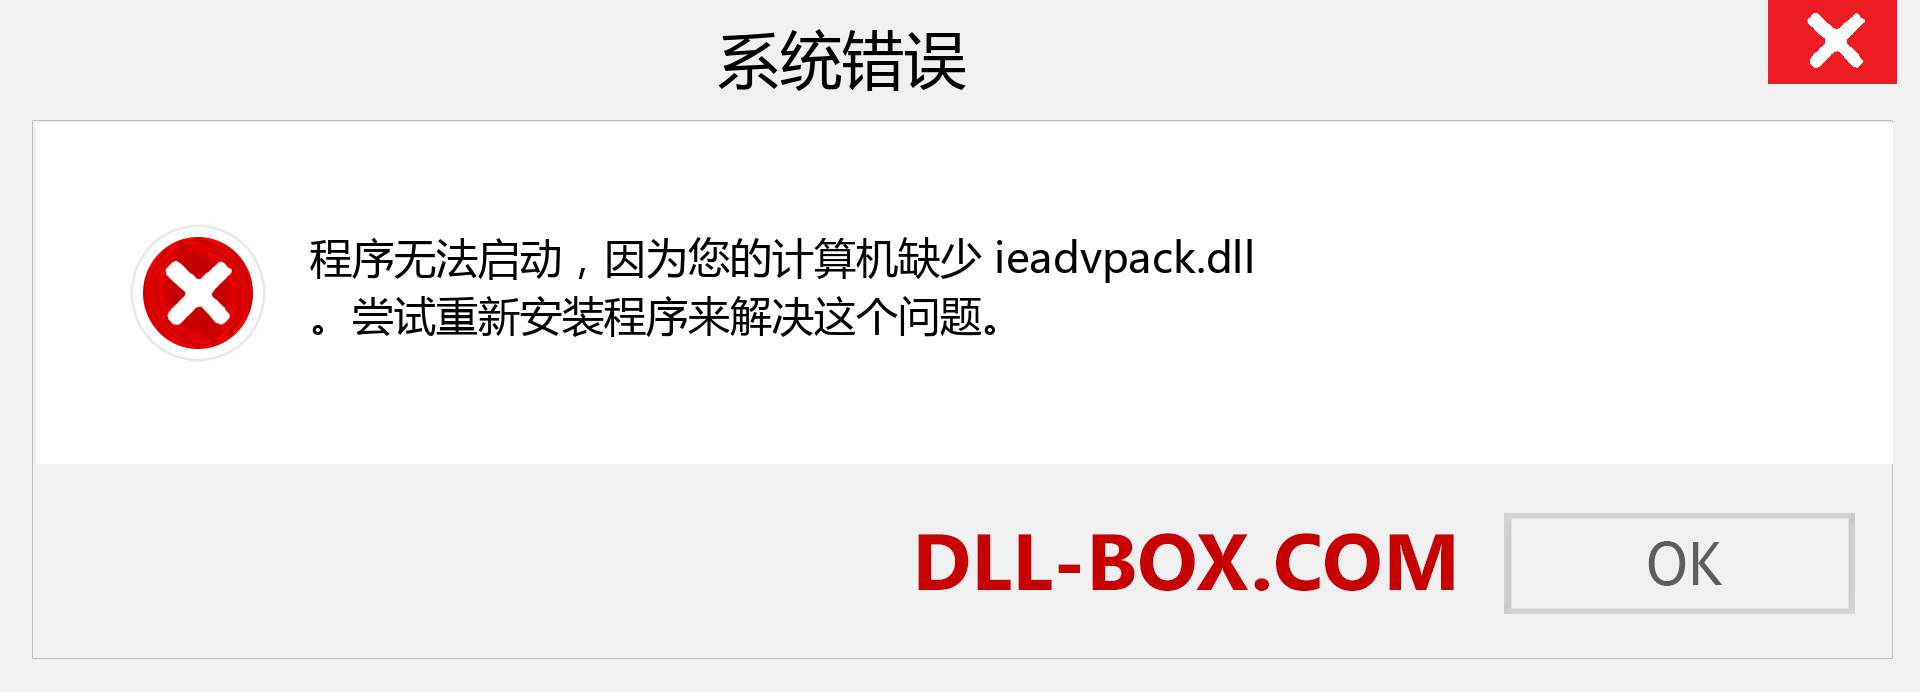 ieadvpack.dll 文件丢失？。 适用于 Windows 7、8、10 的下载 - 修复 Windows、照片、图像上的 ieadvpack dll 丢失错误